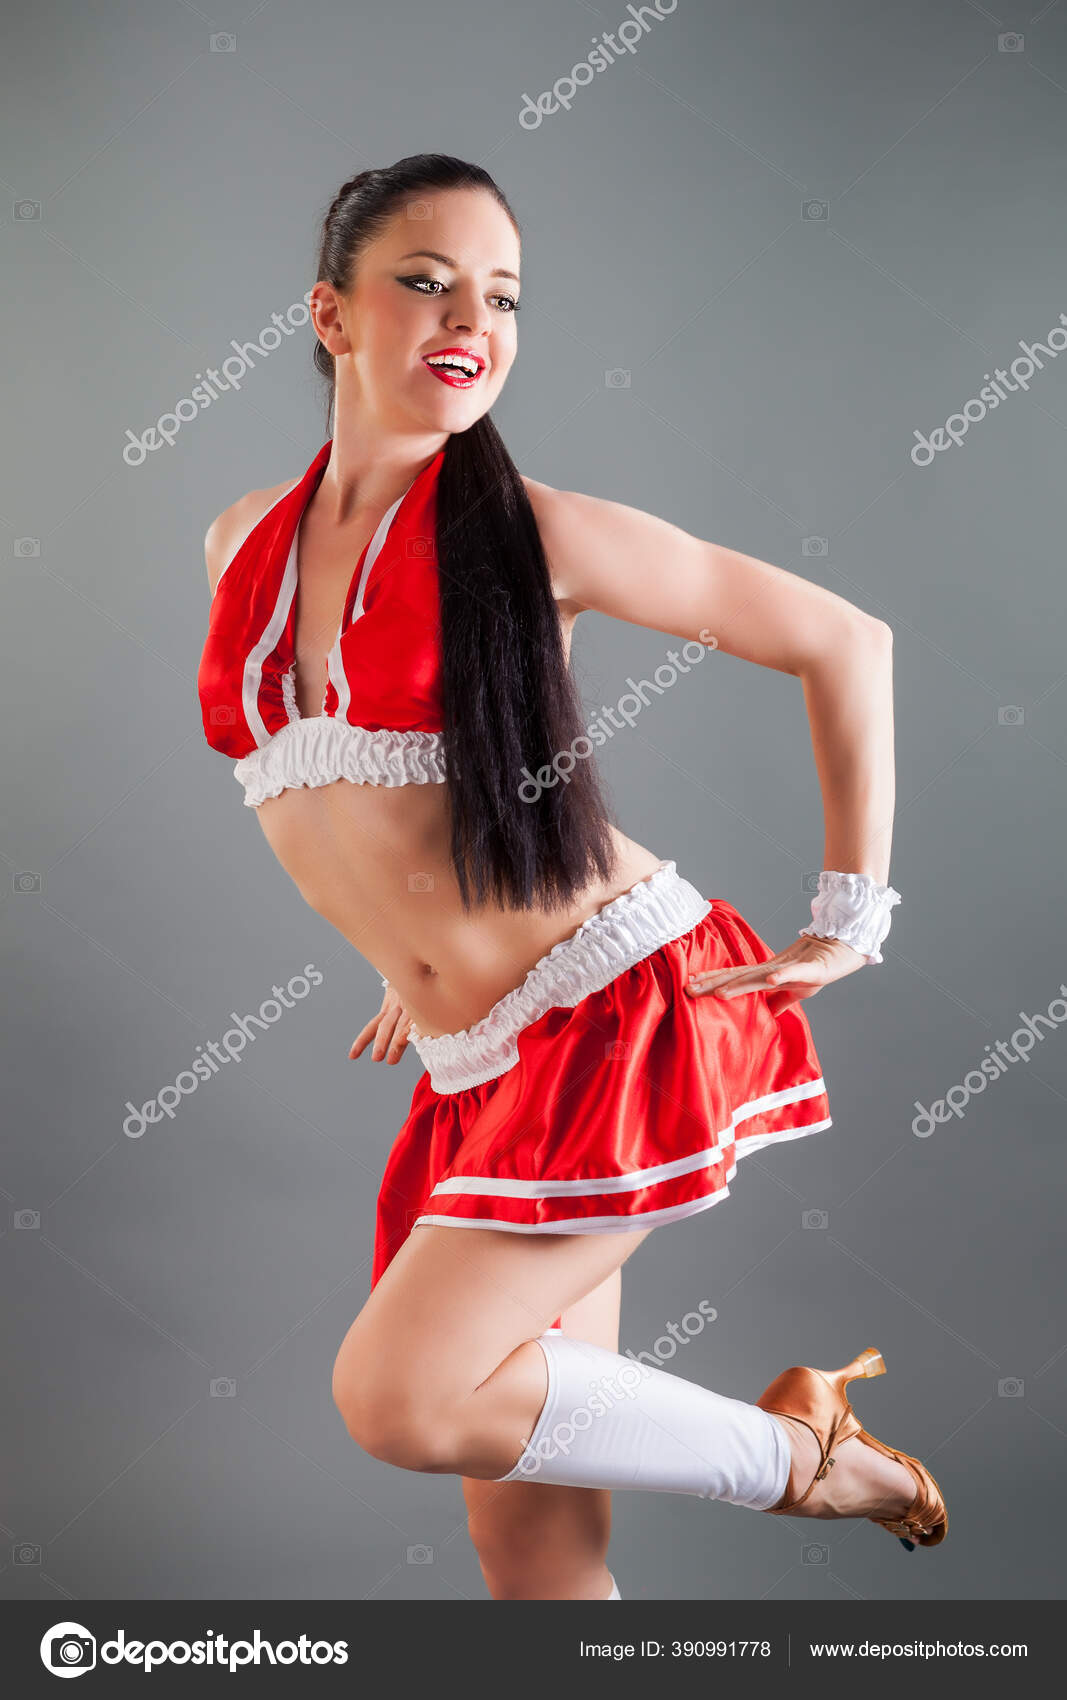 under cheerleader kjolen uppriktig